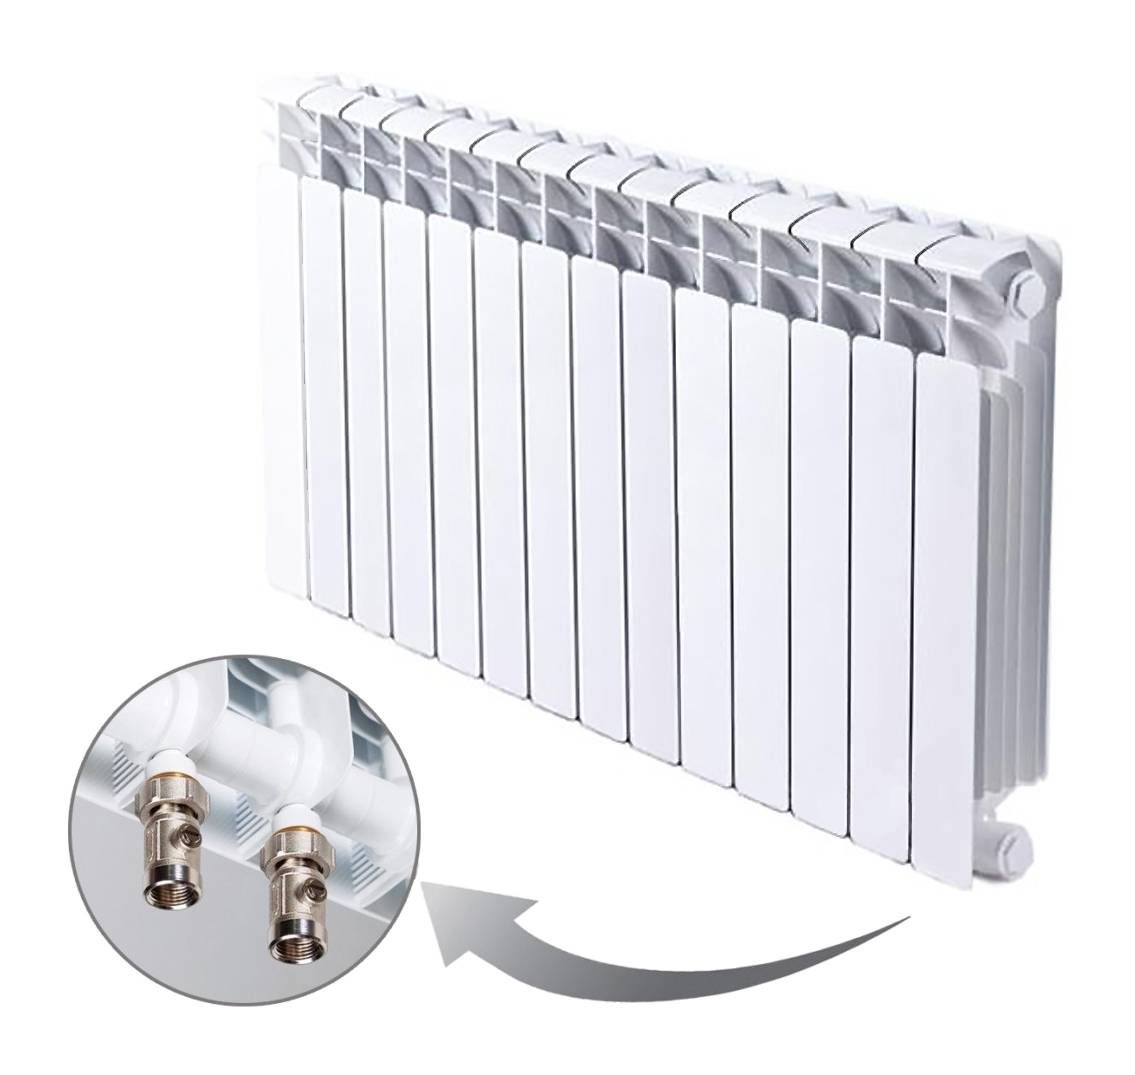 Какие радиаторы выбрать для отопления: биметаллические или алюминиевые